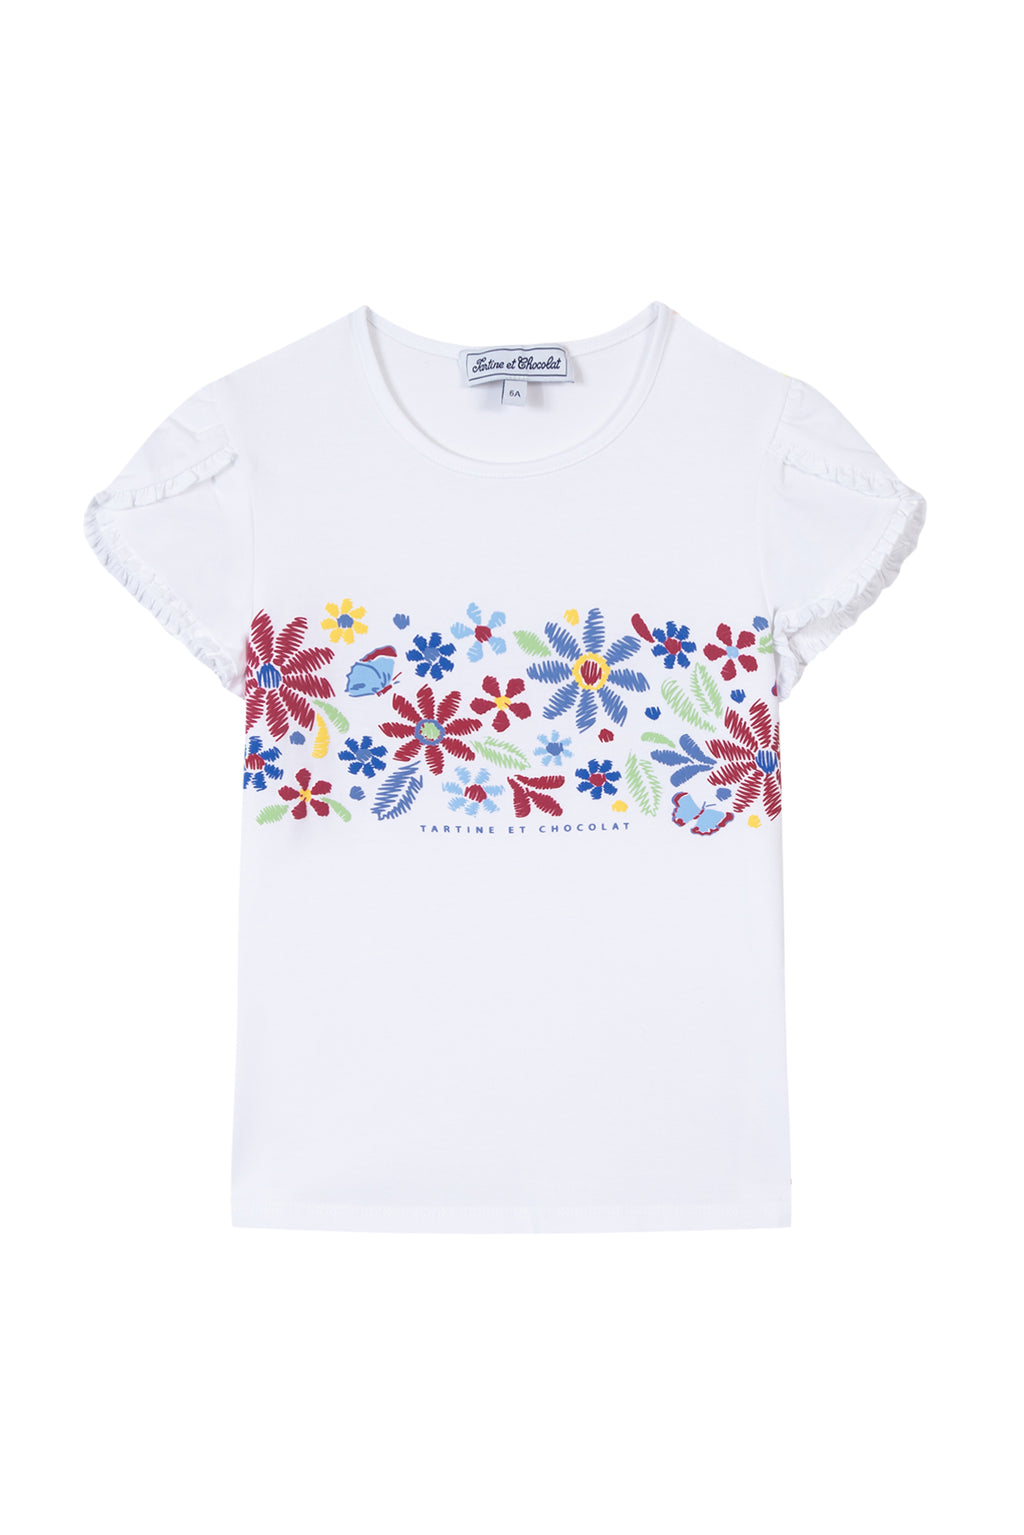 T-shirt - Bougainvillier Illustration flower